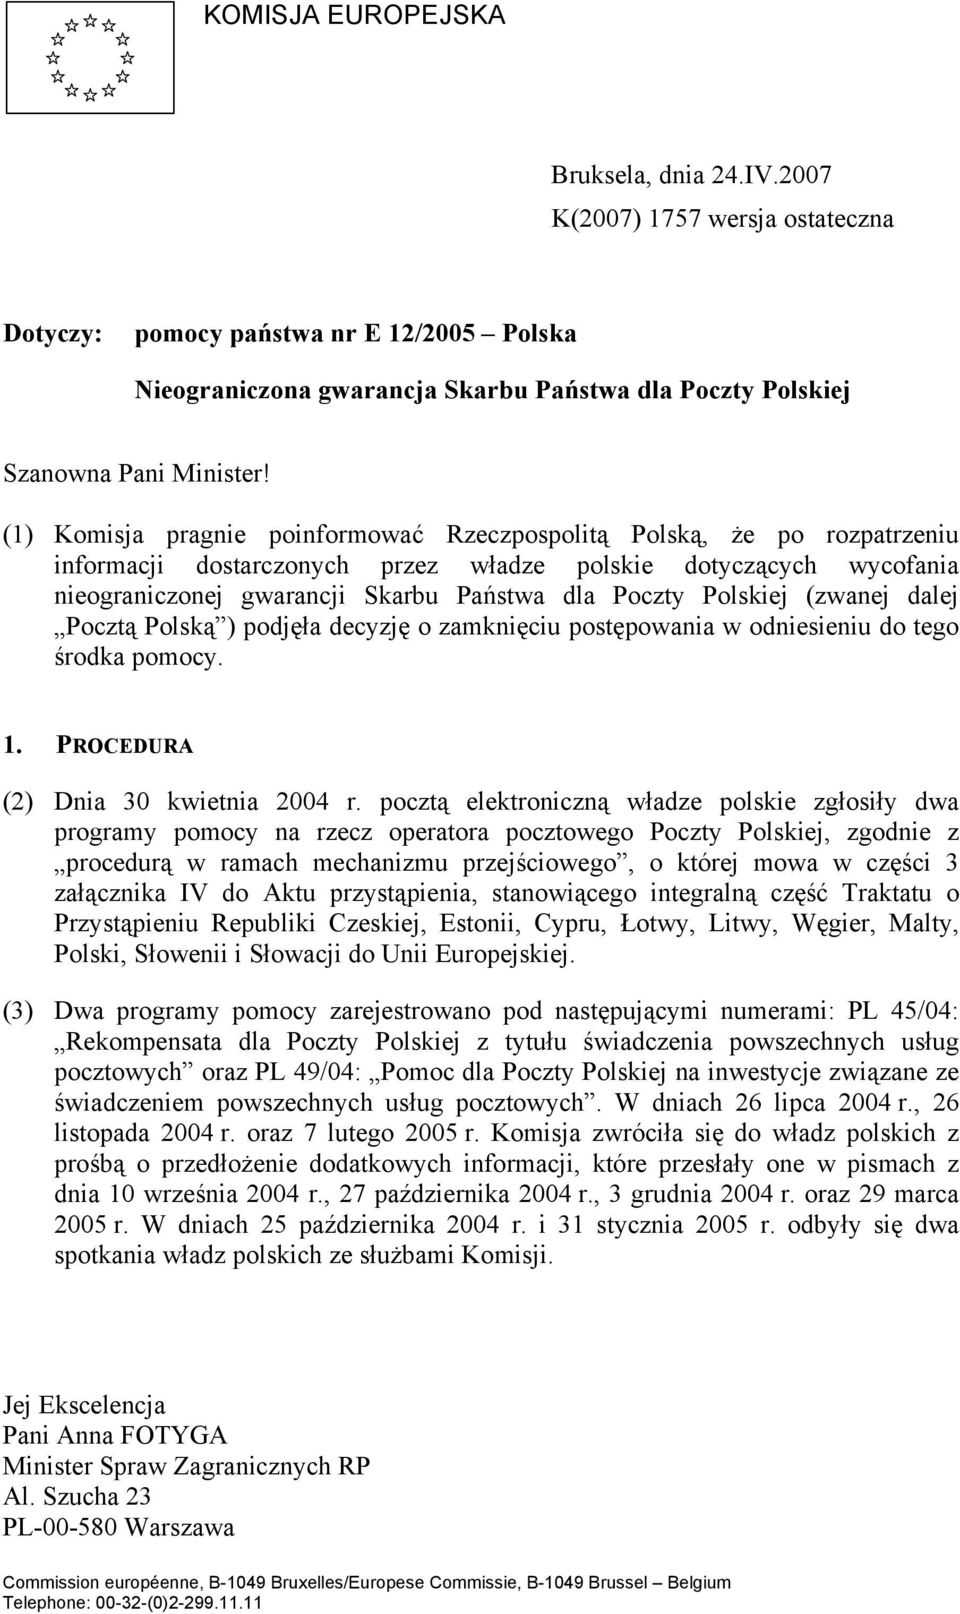 (1) Komisja pragnie poinformować Rzeczpospolitą Polską, że po rozpatrzeniu informacji dostarczonych przez władze polskie dotyczących wycofania nieograniczonej gwarancji Skarbu Państwa dla Poczty